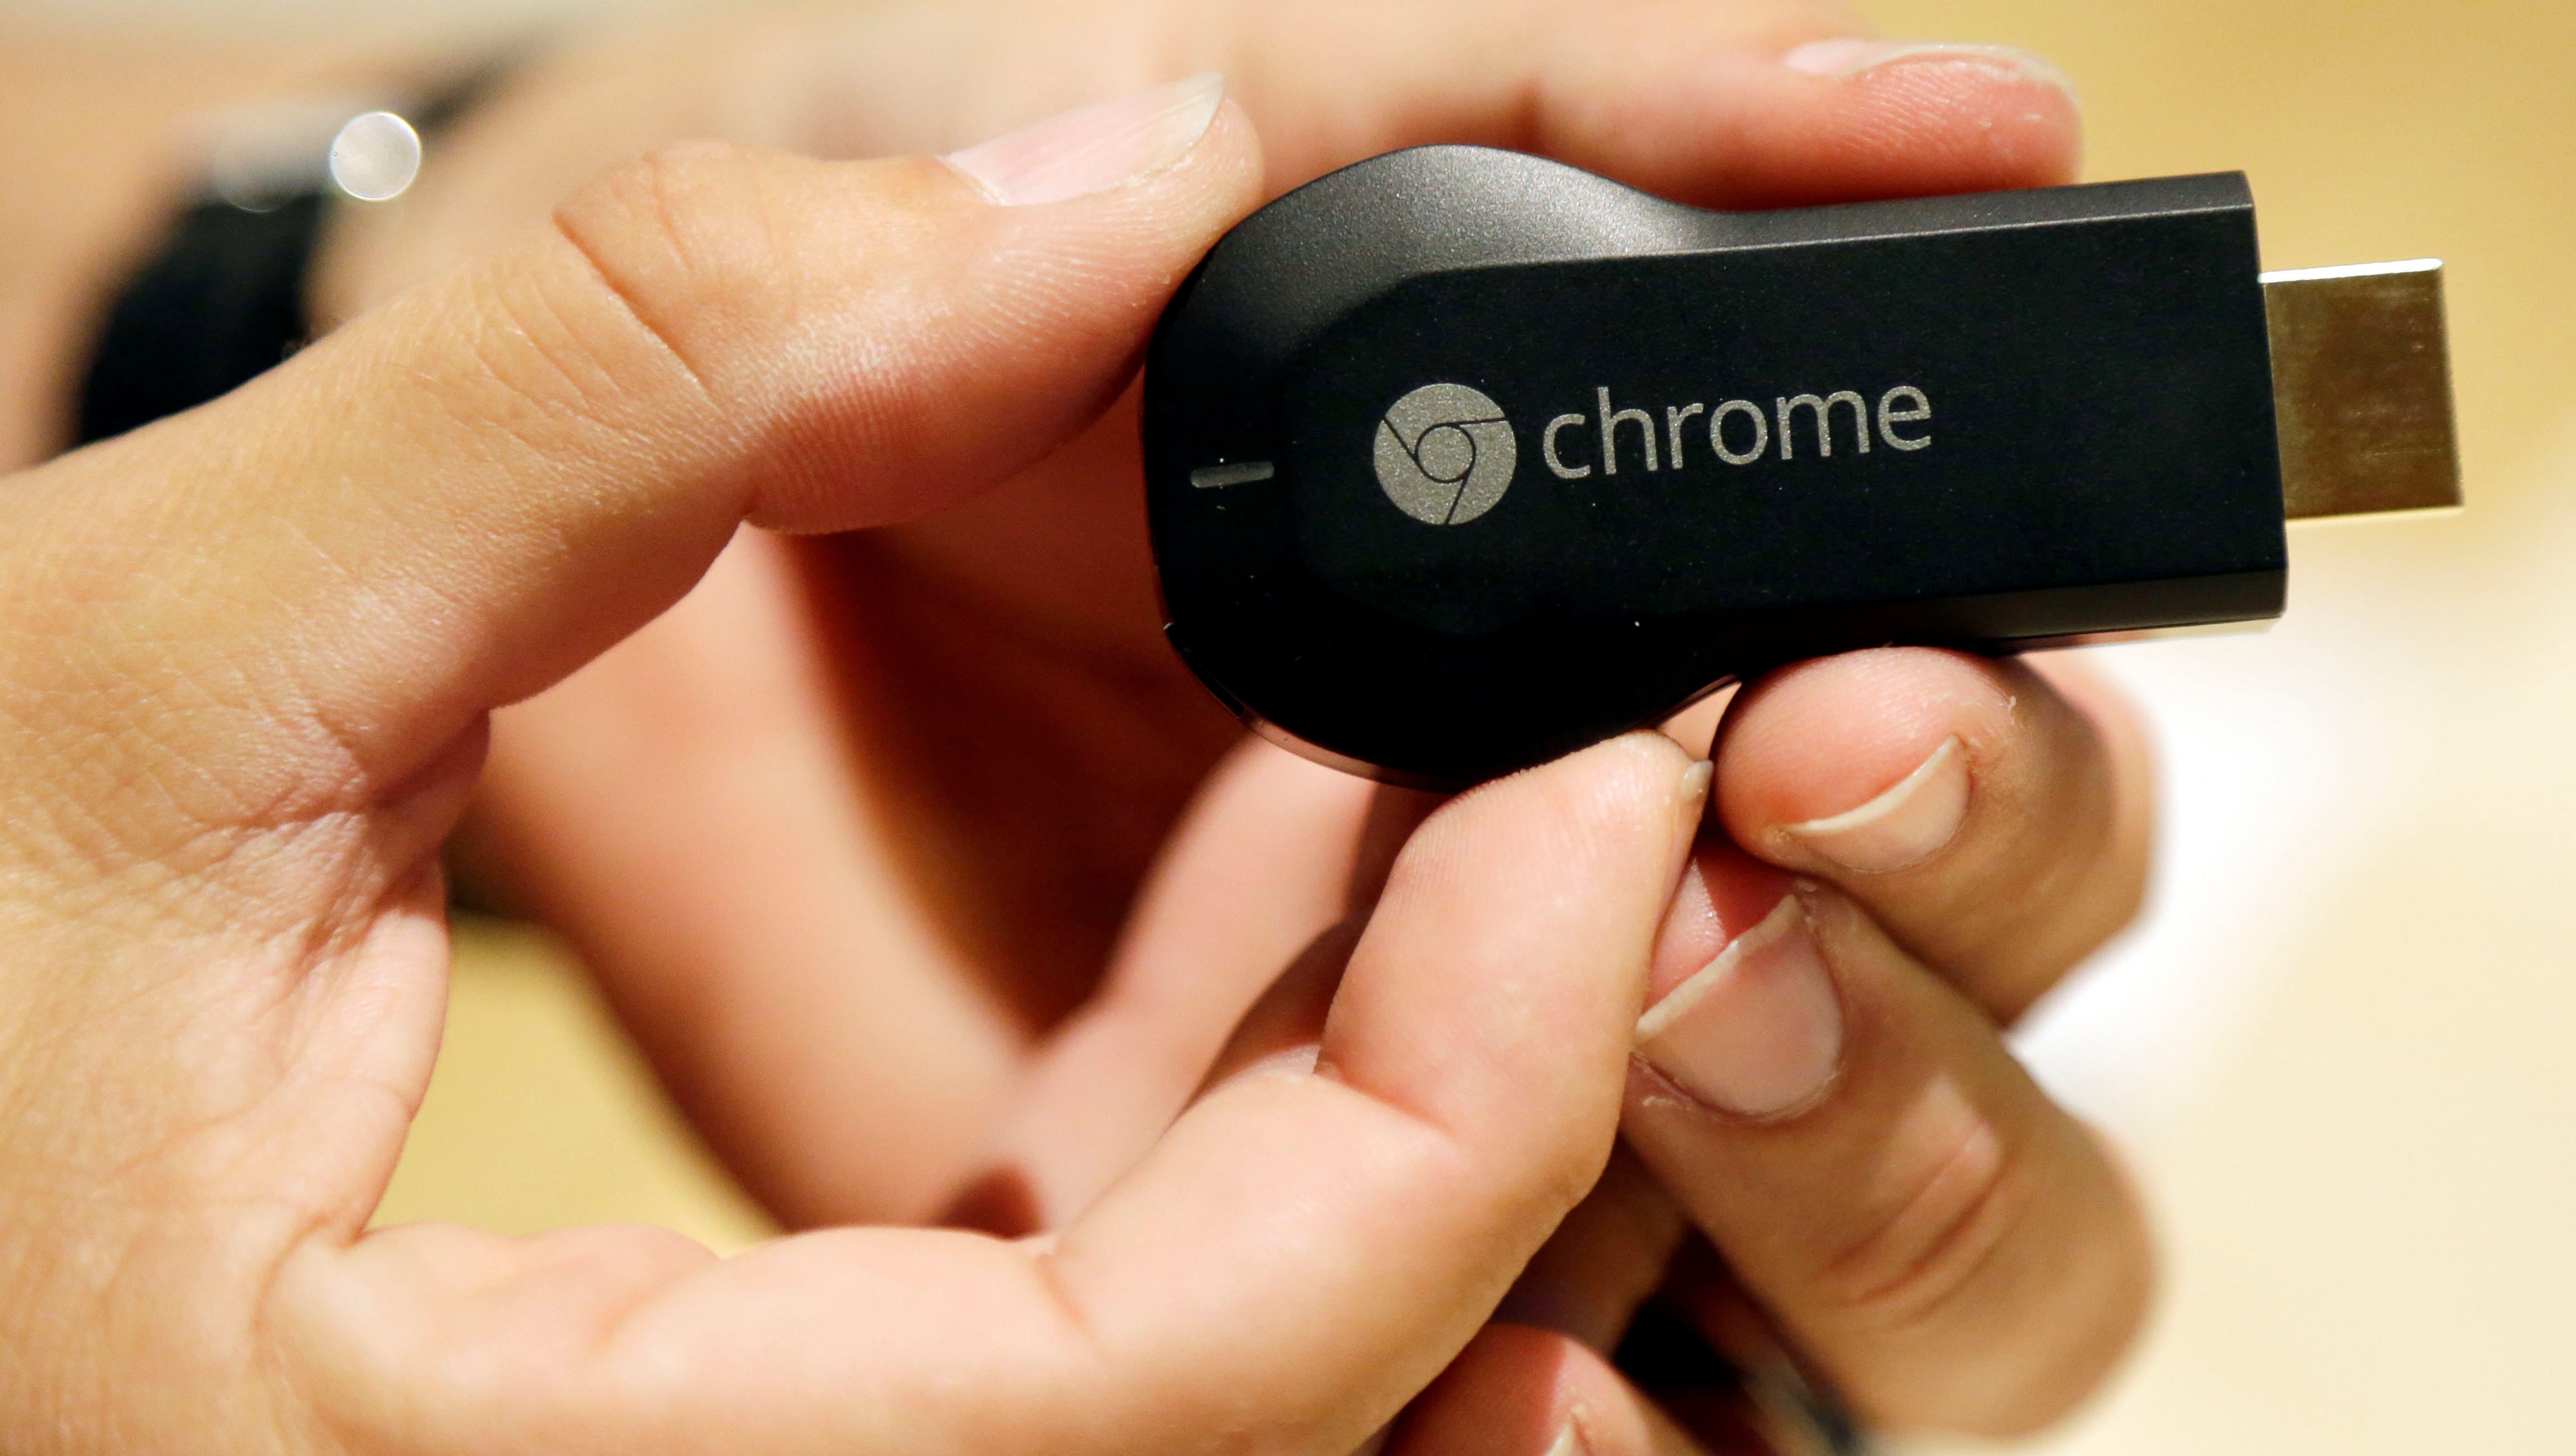 sig selv eksil Forventer Google's Chromecast makes your TV smarter